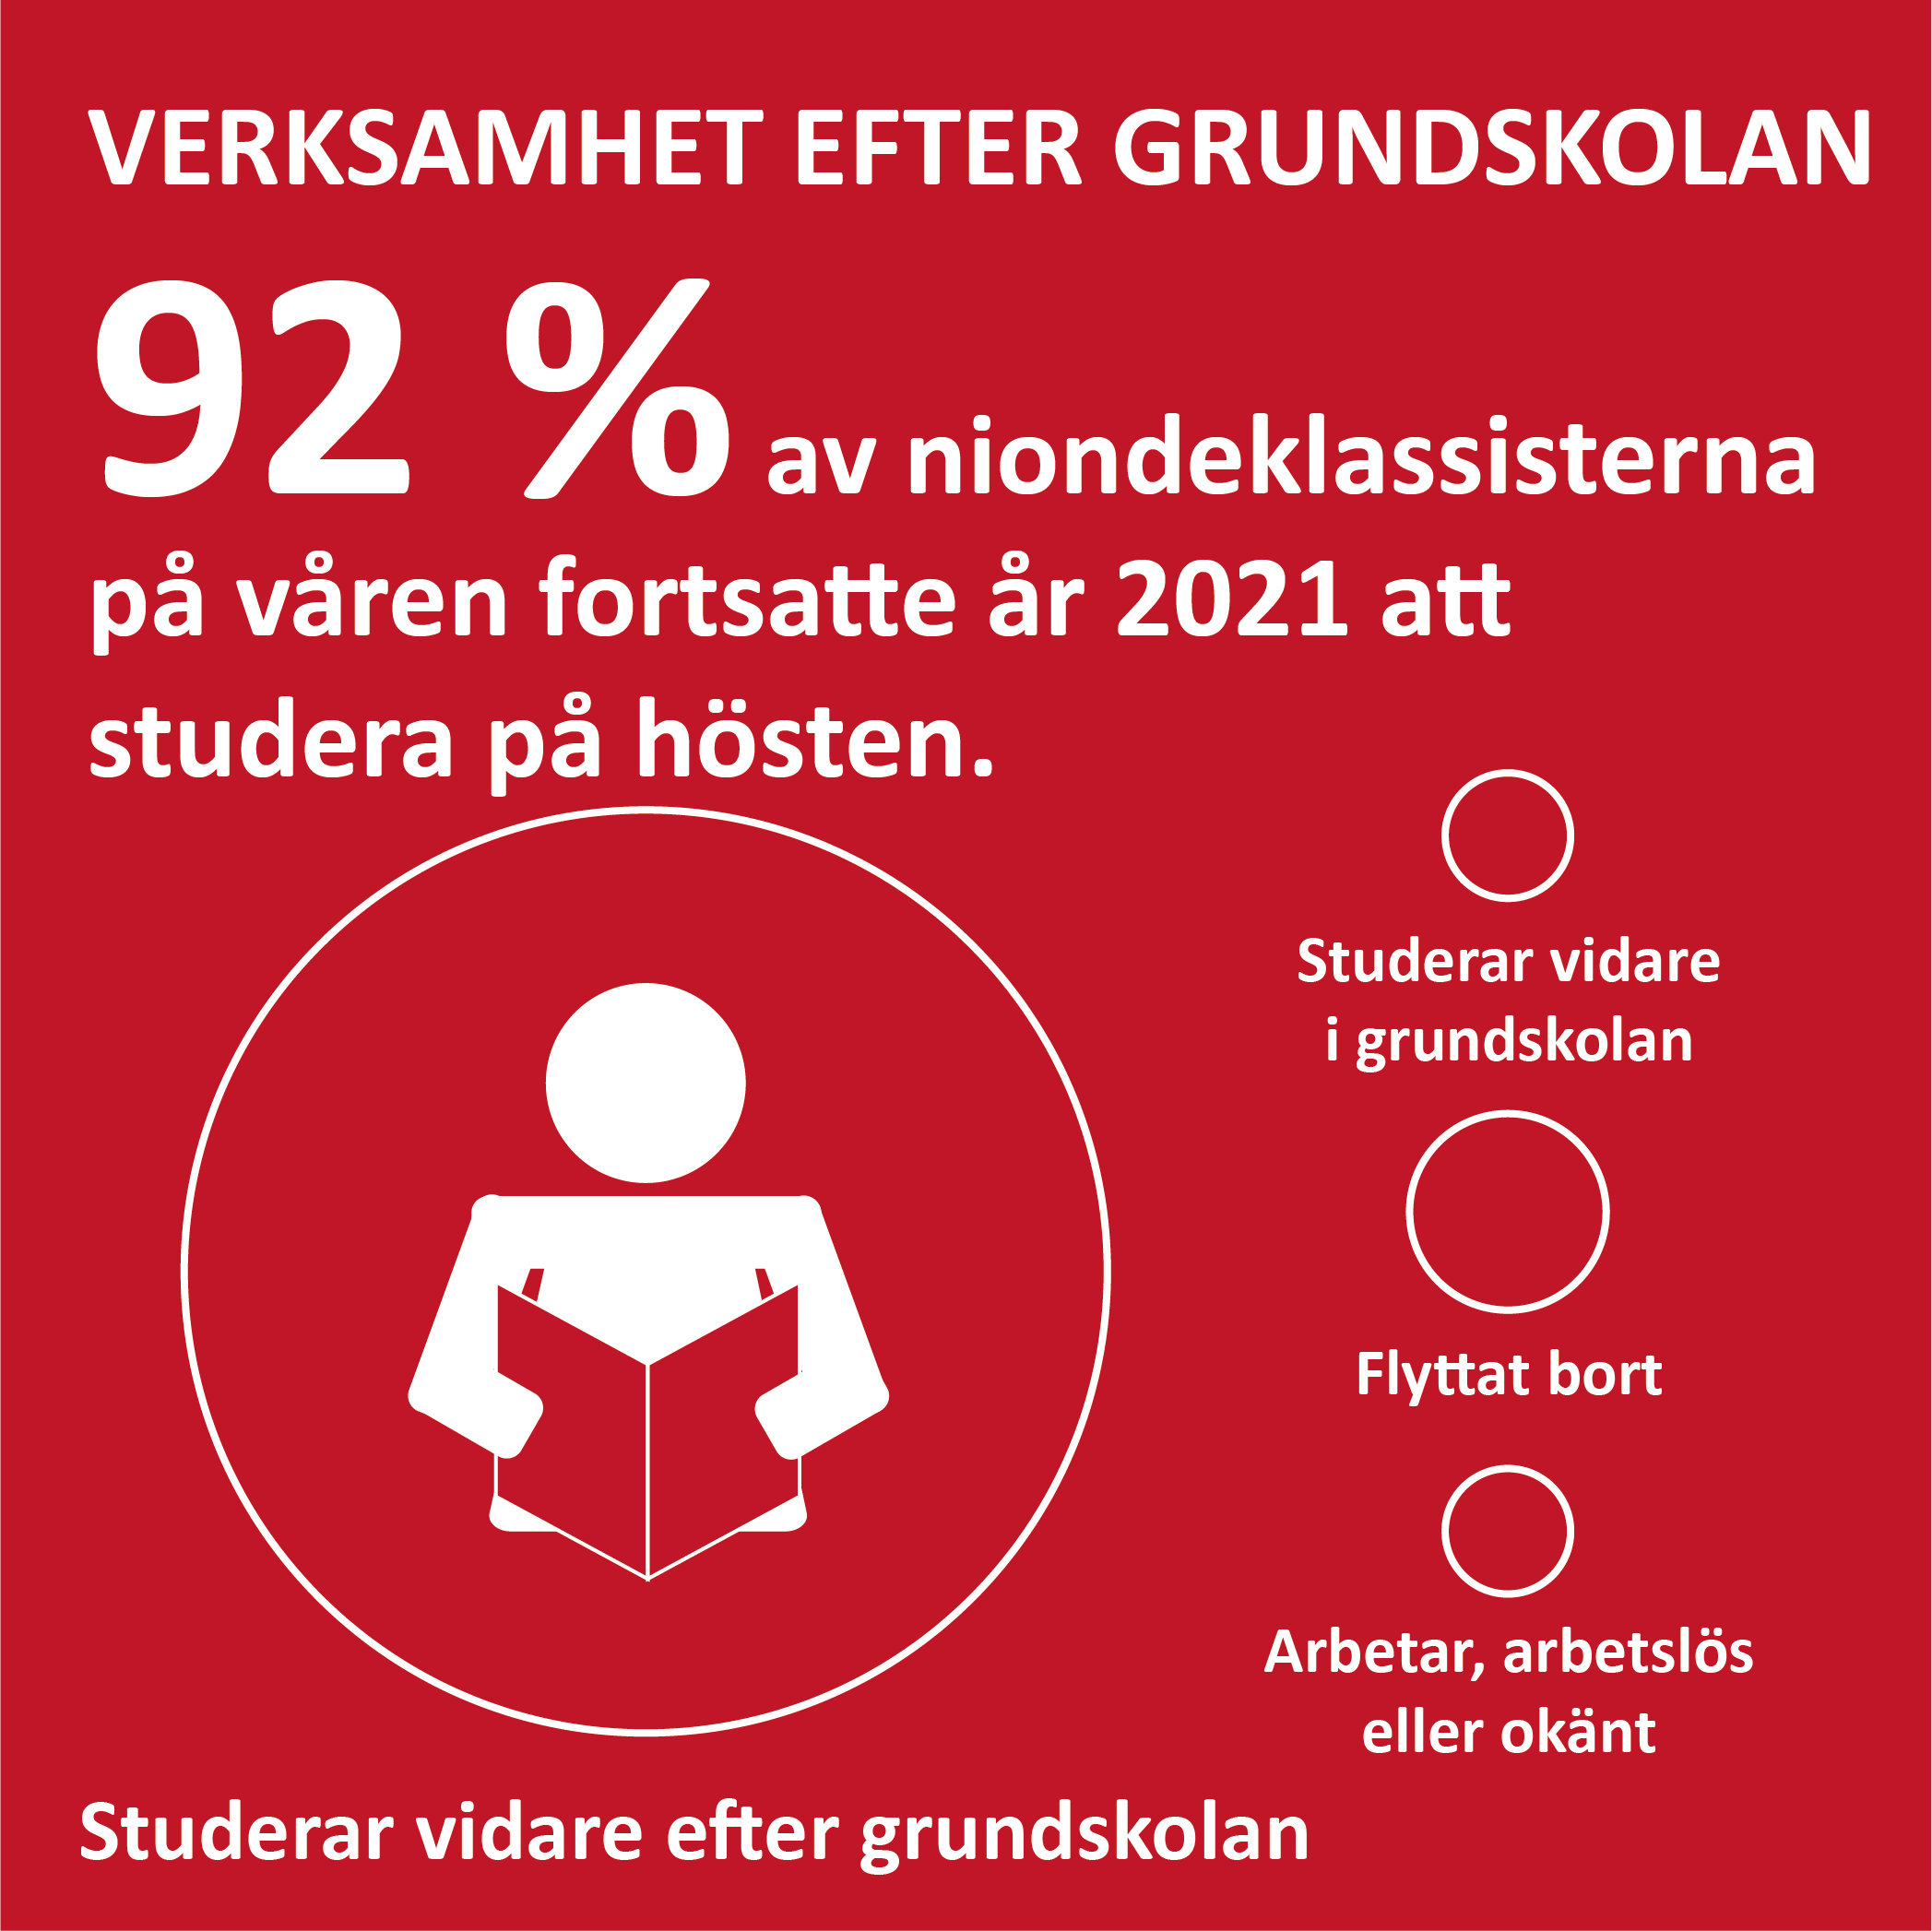 Infografik om sysselsättning efter grundskolan på Åland